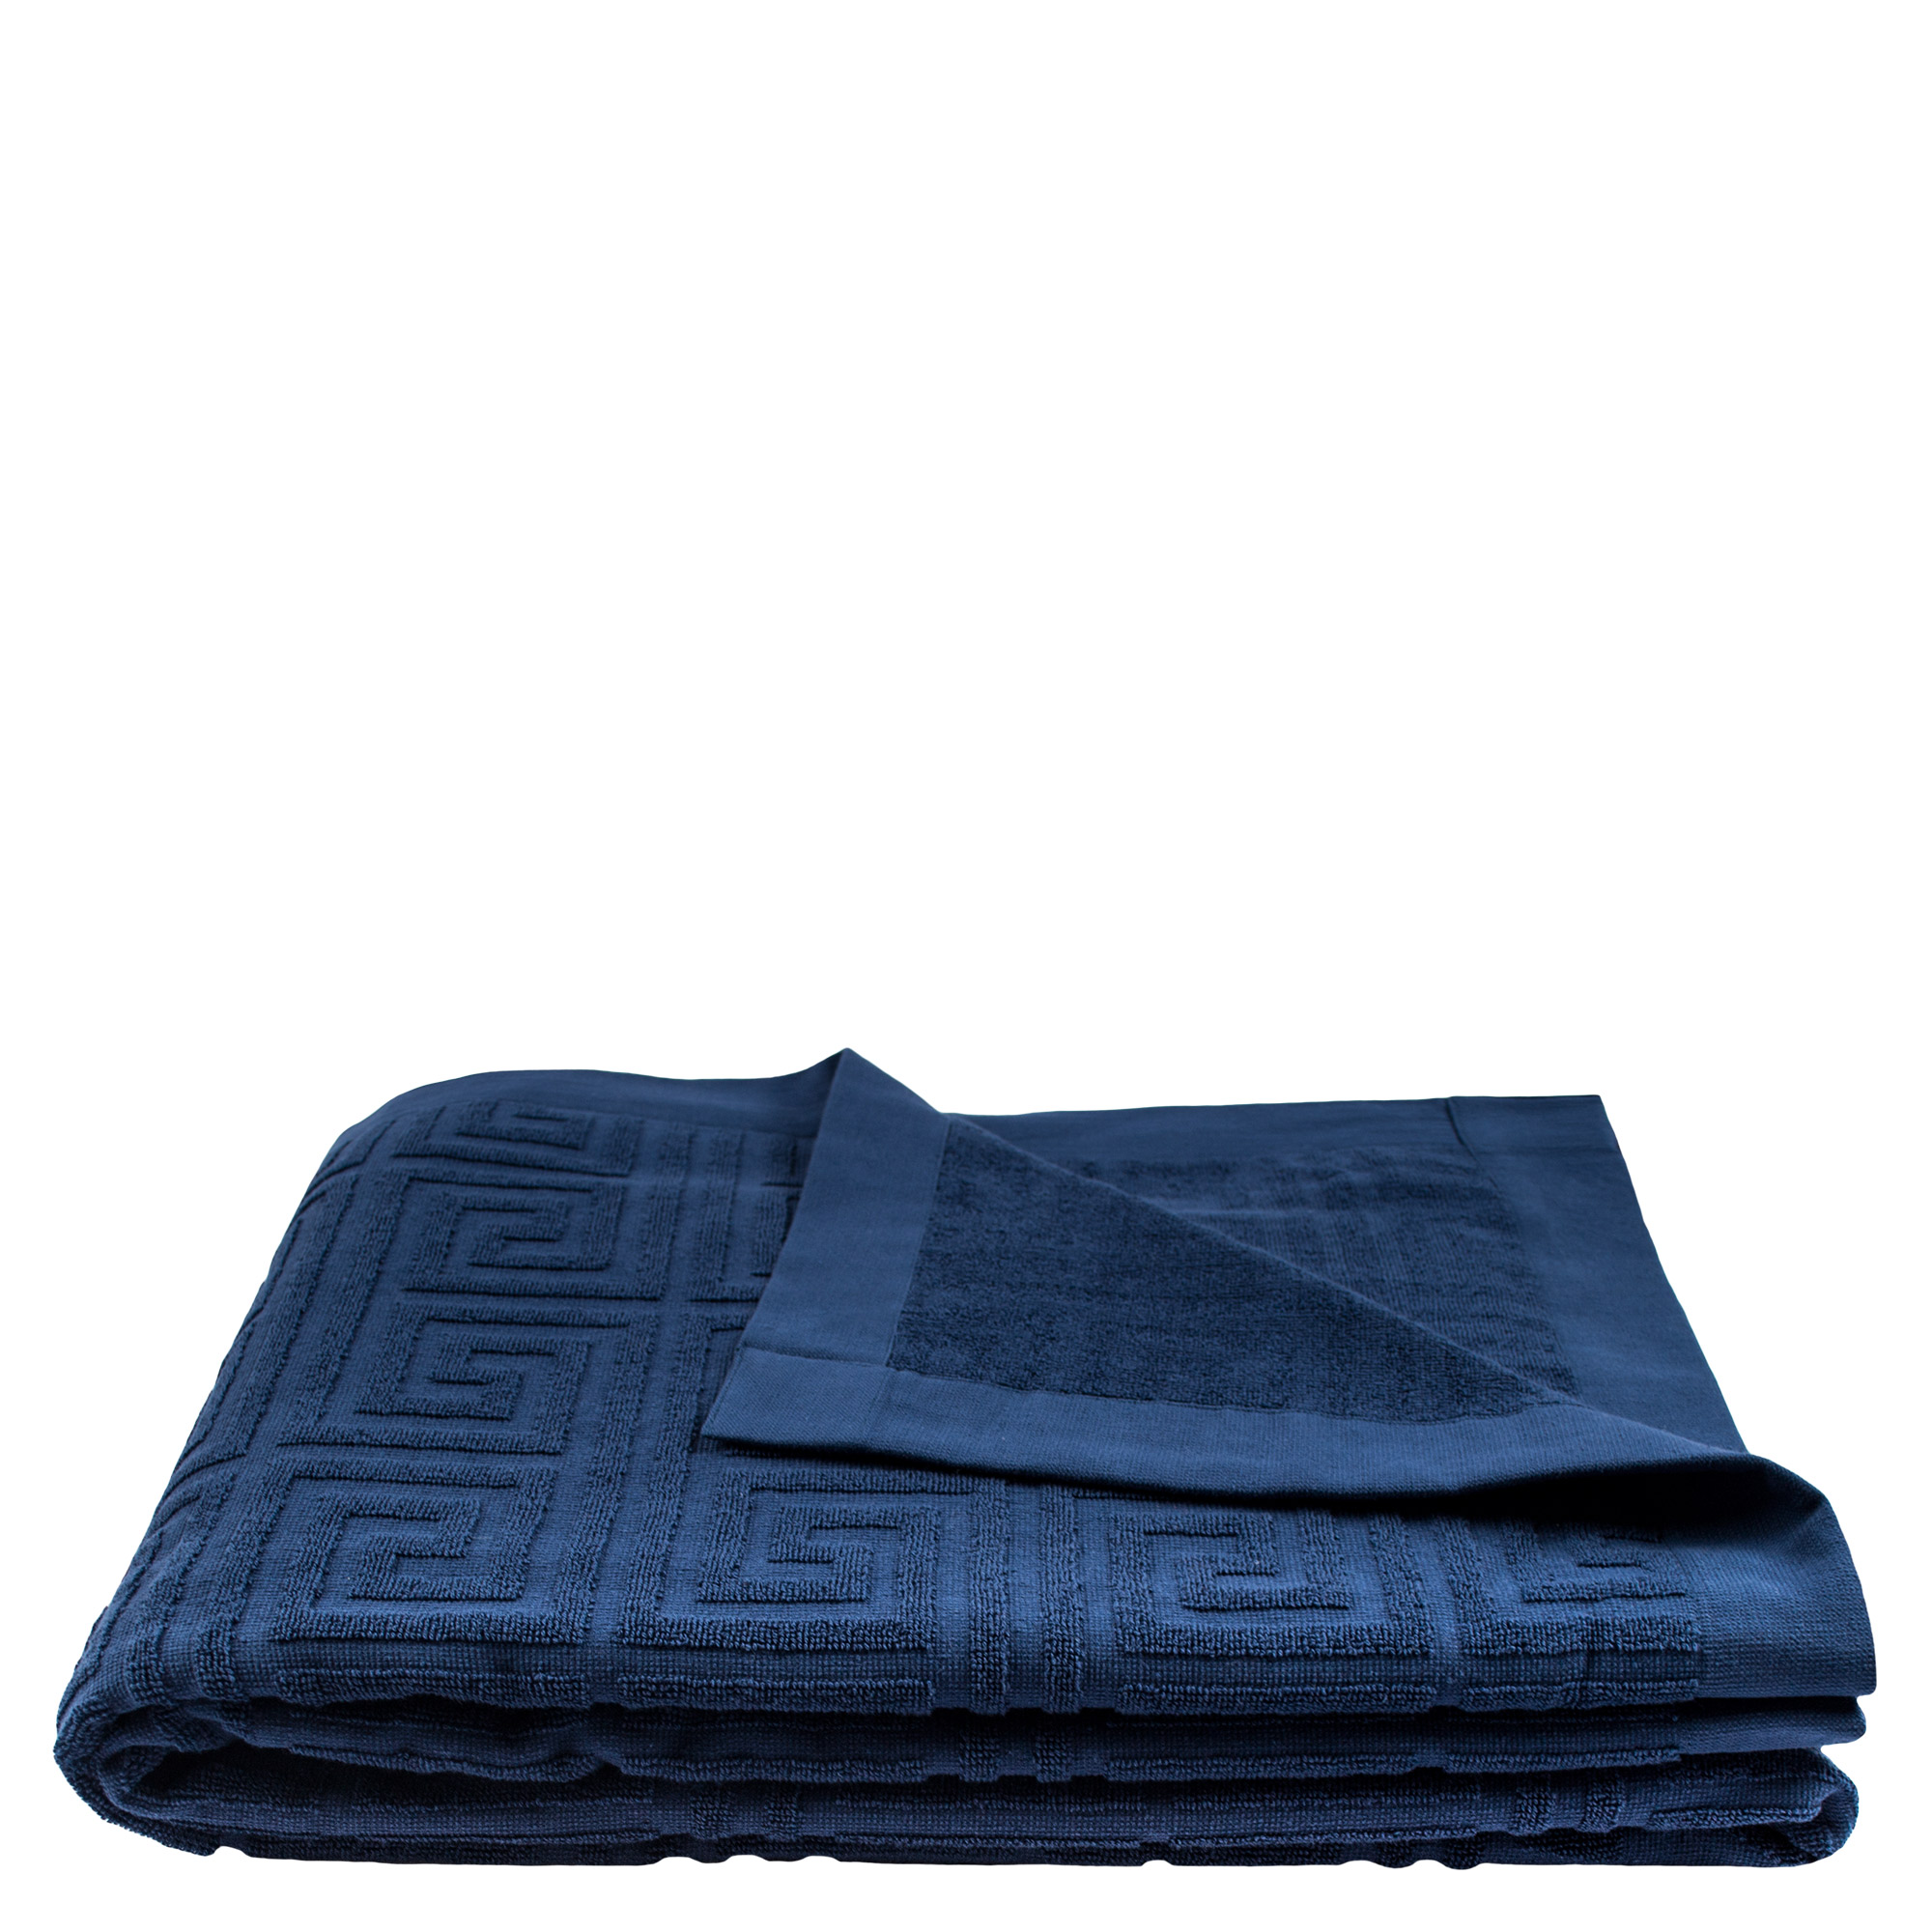 Strandtuch 150x200 blau-denim aus Baumwolle, zoeppritz Water Leg